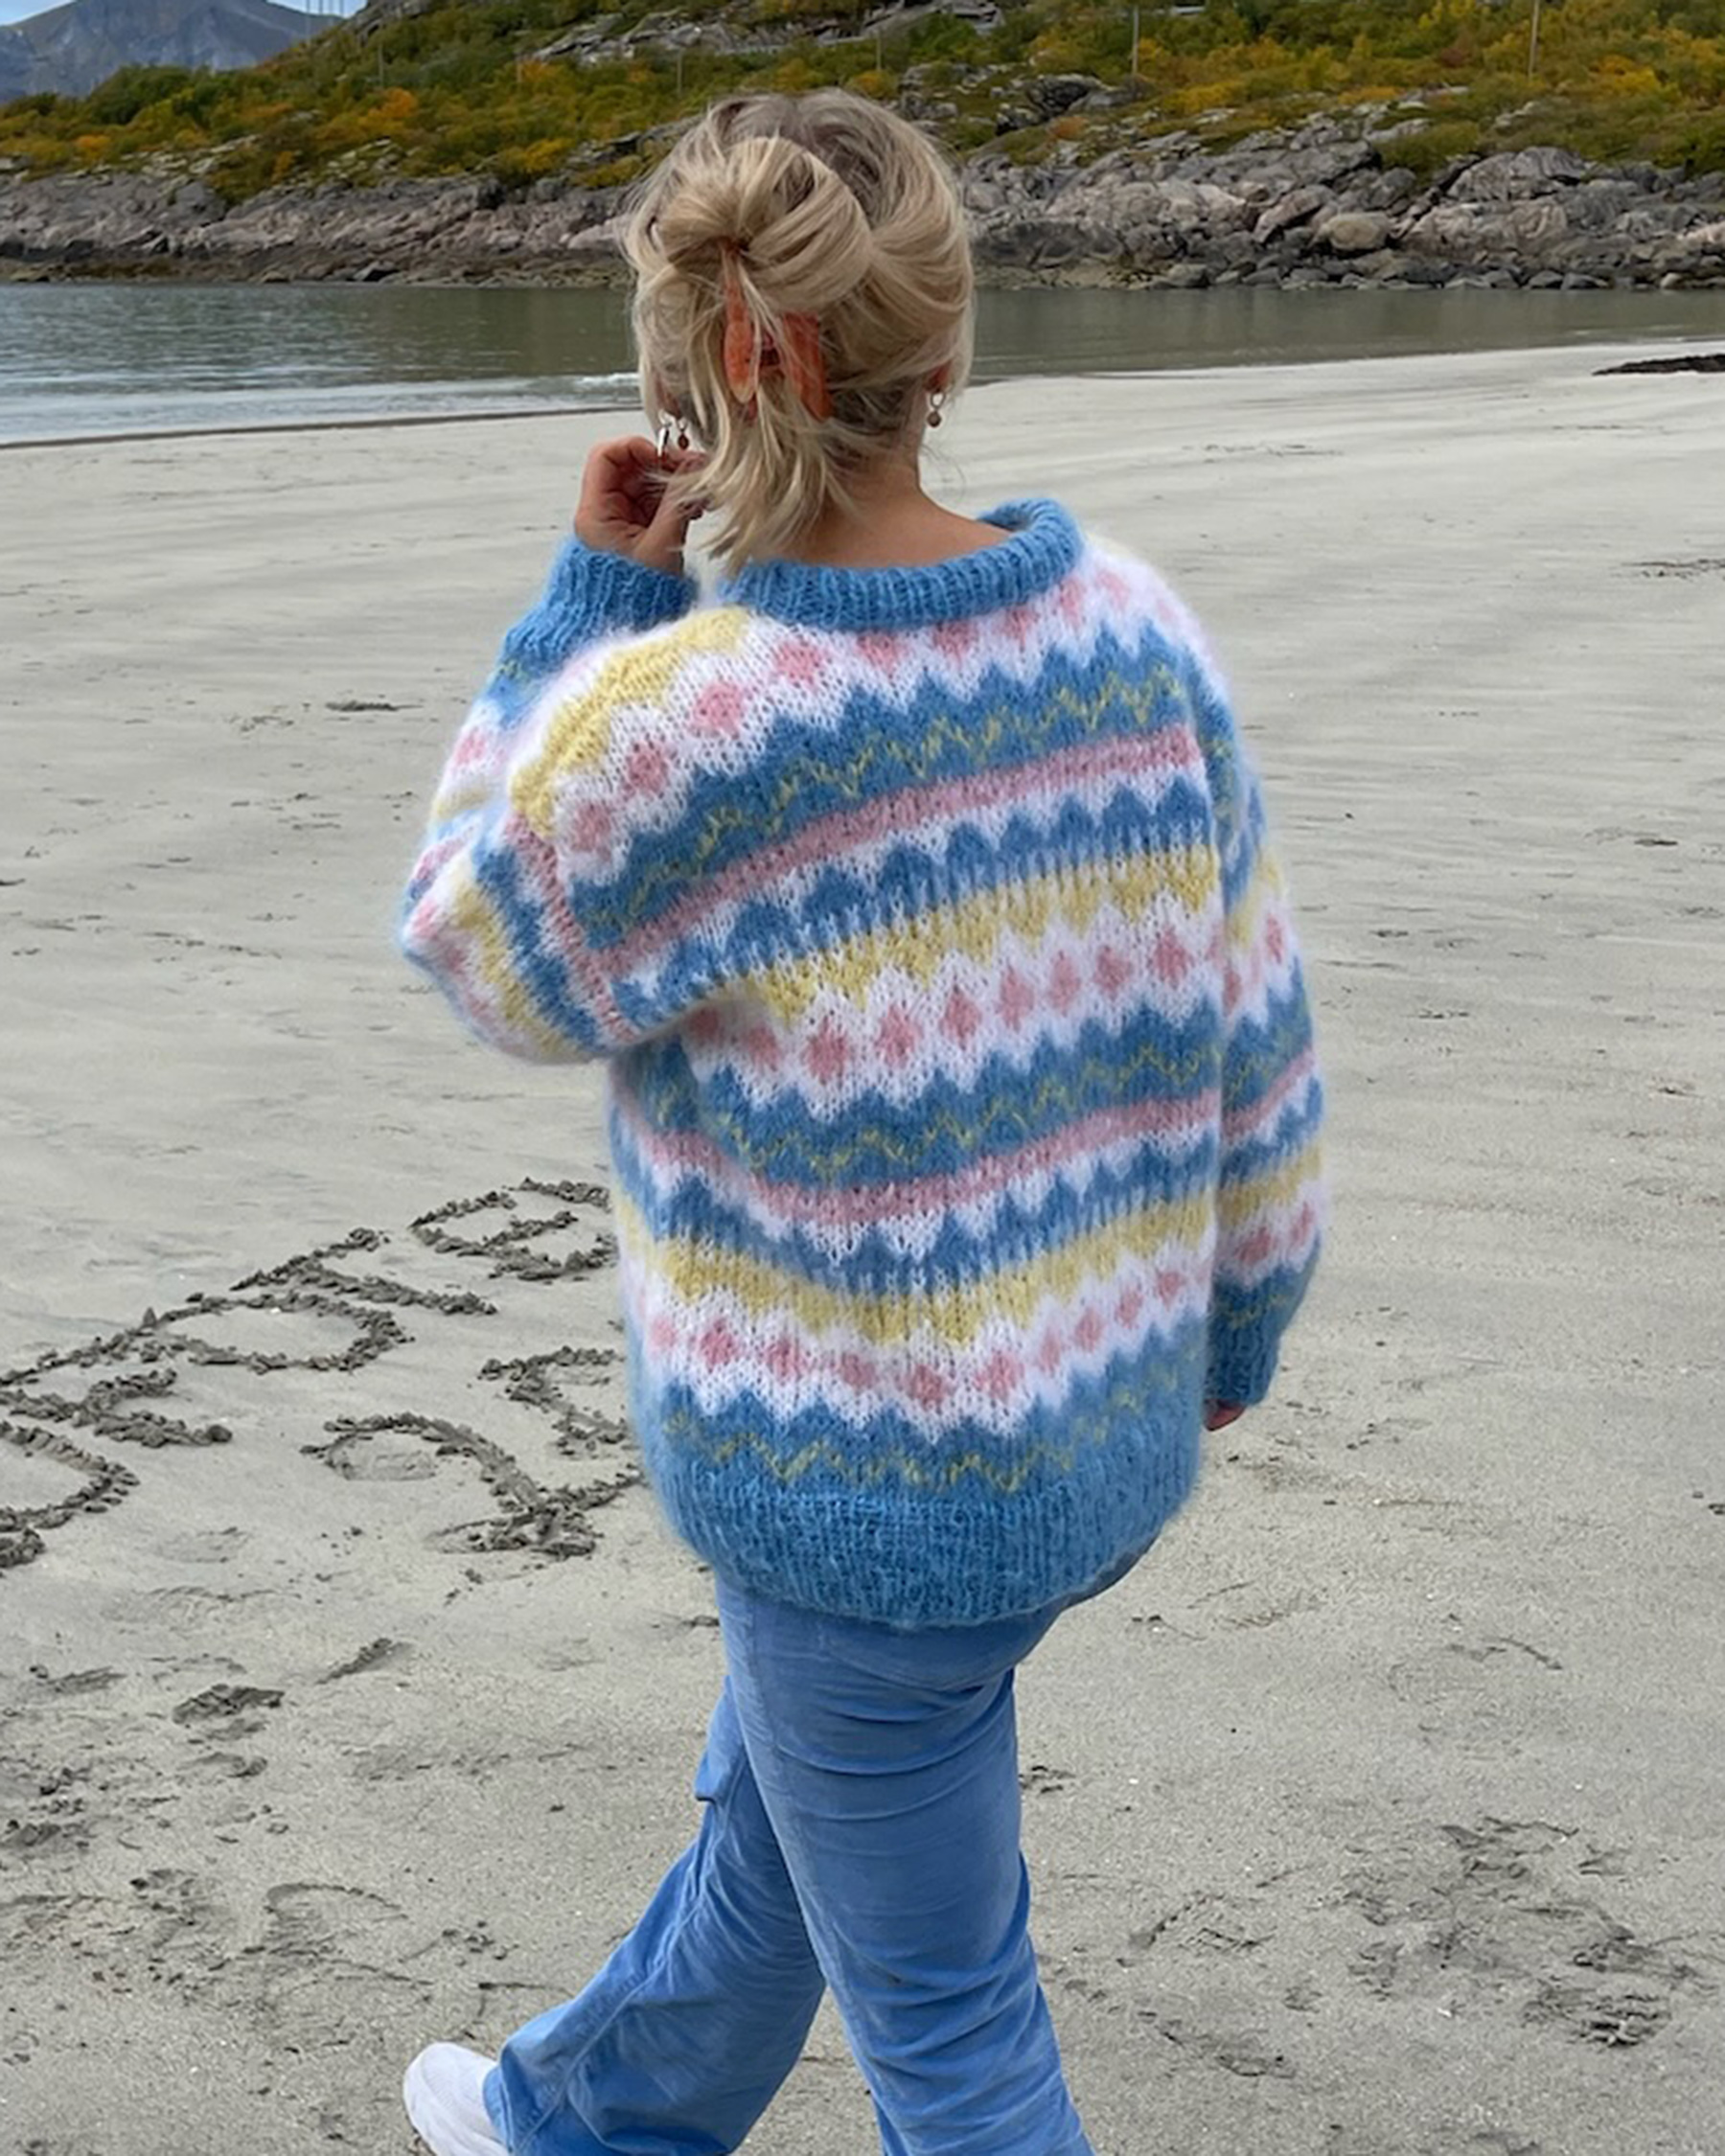 cynthia soft crochet yarn hand knitting